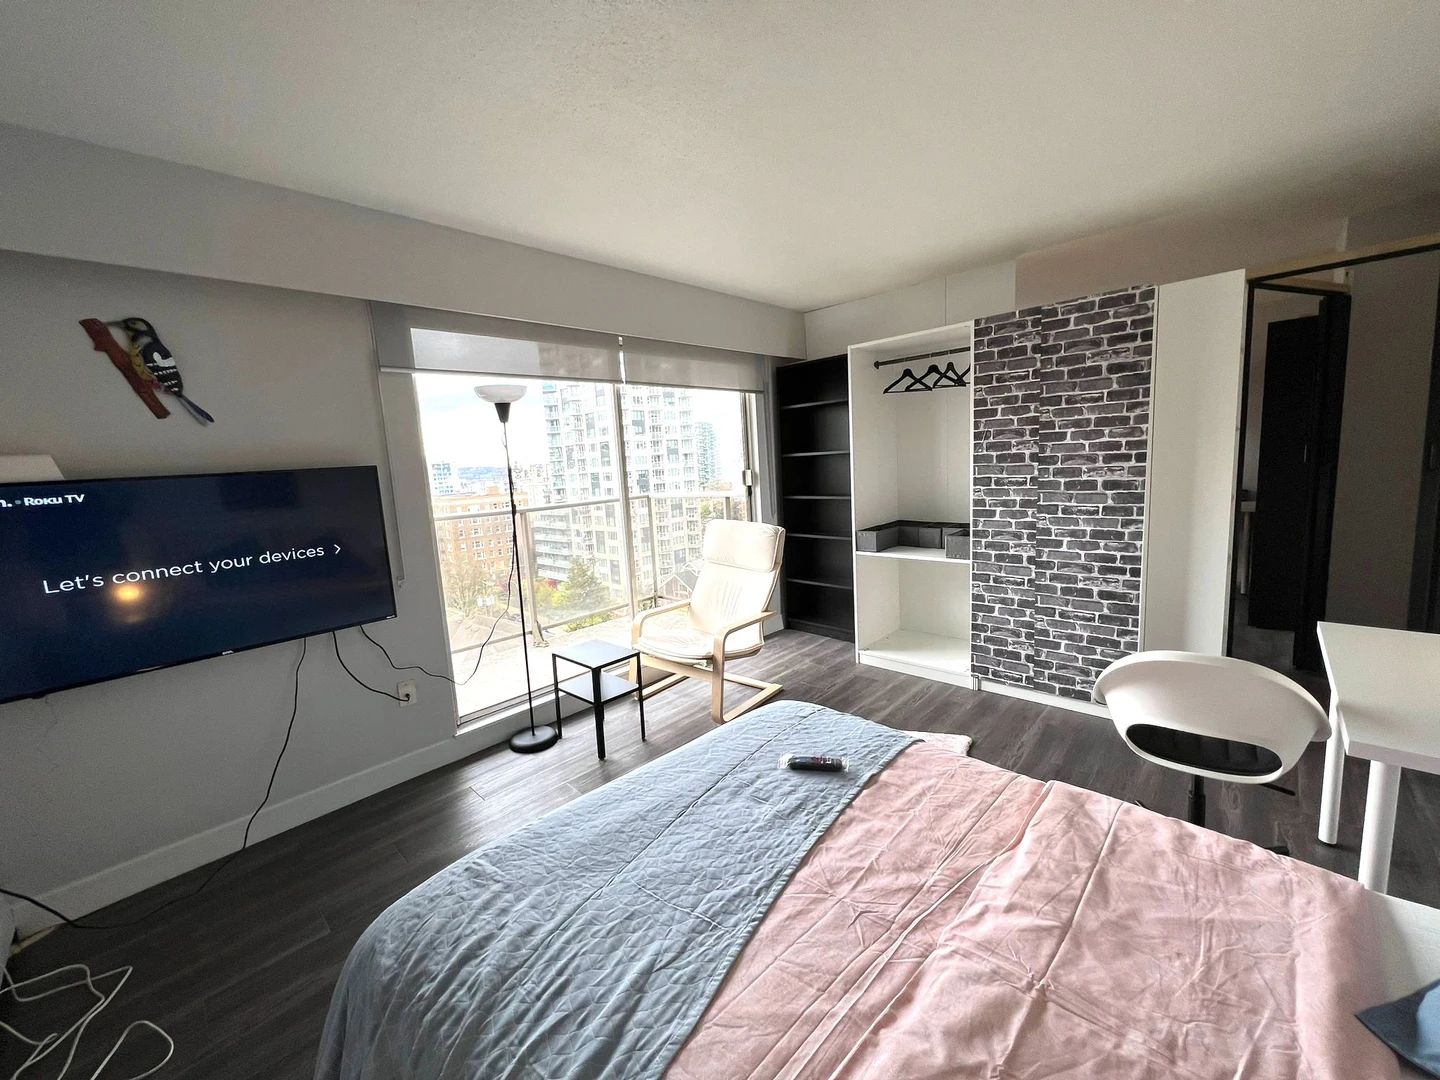 Alquiler de habitación en piso compartido en Vancouver